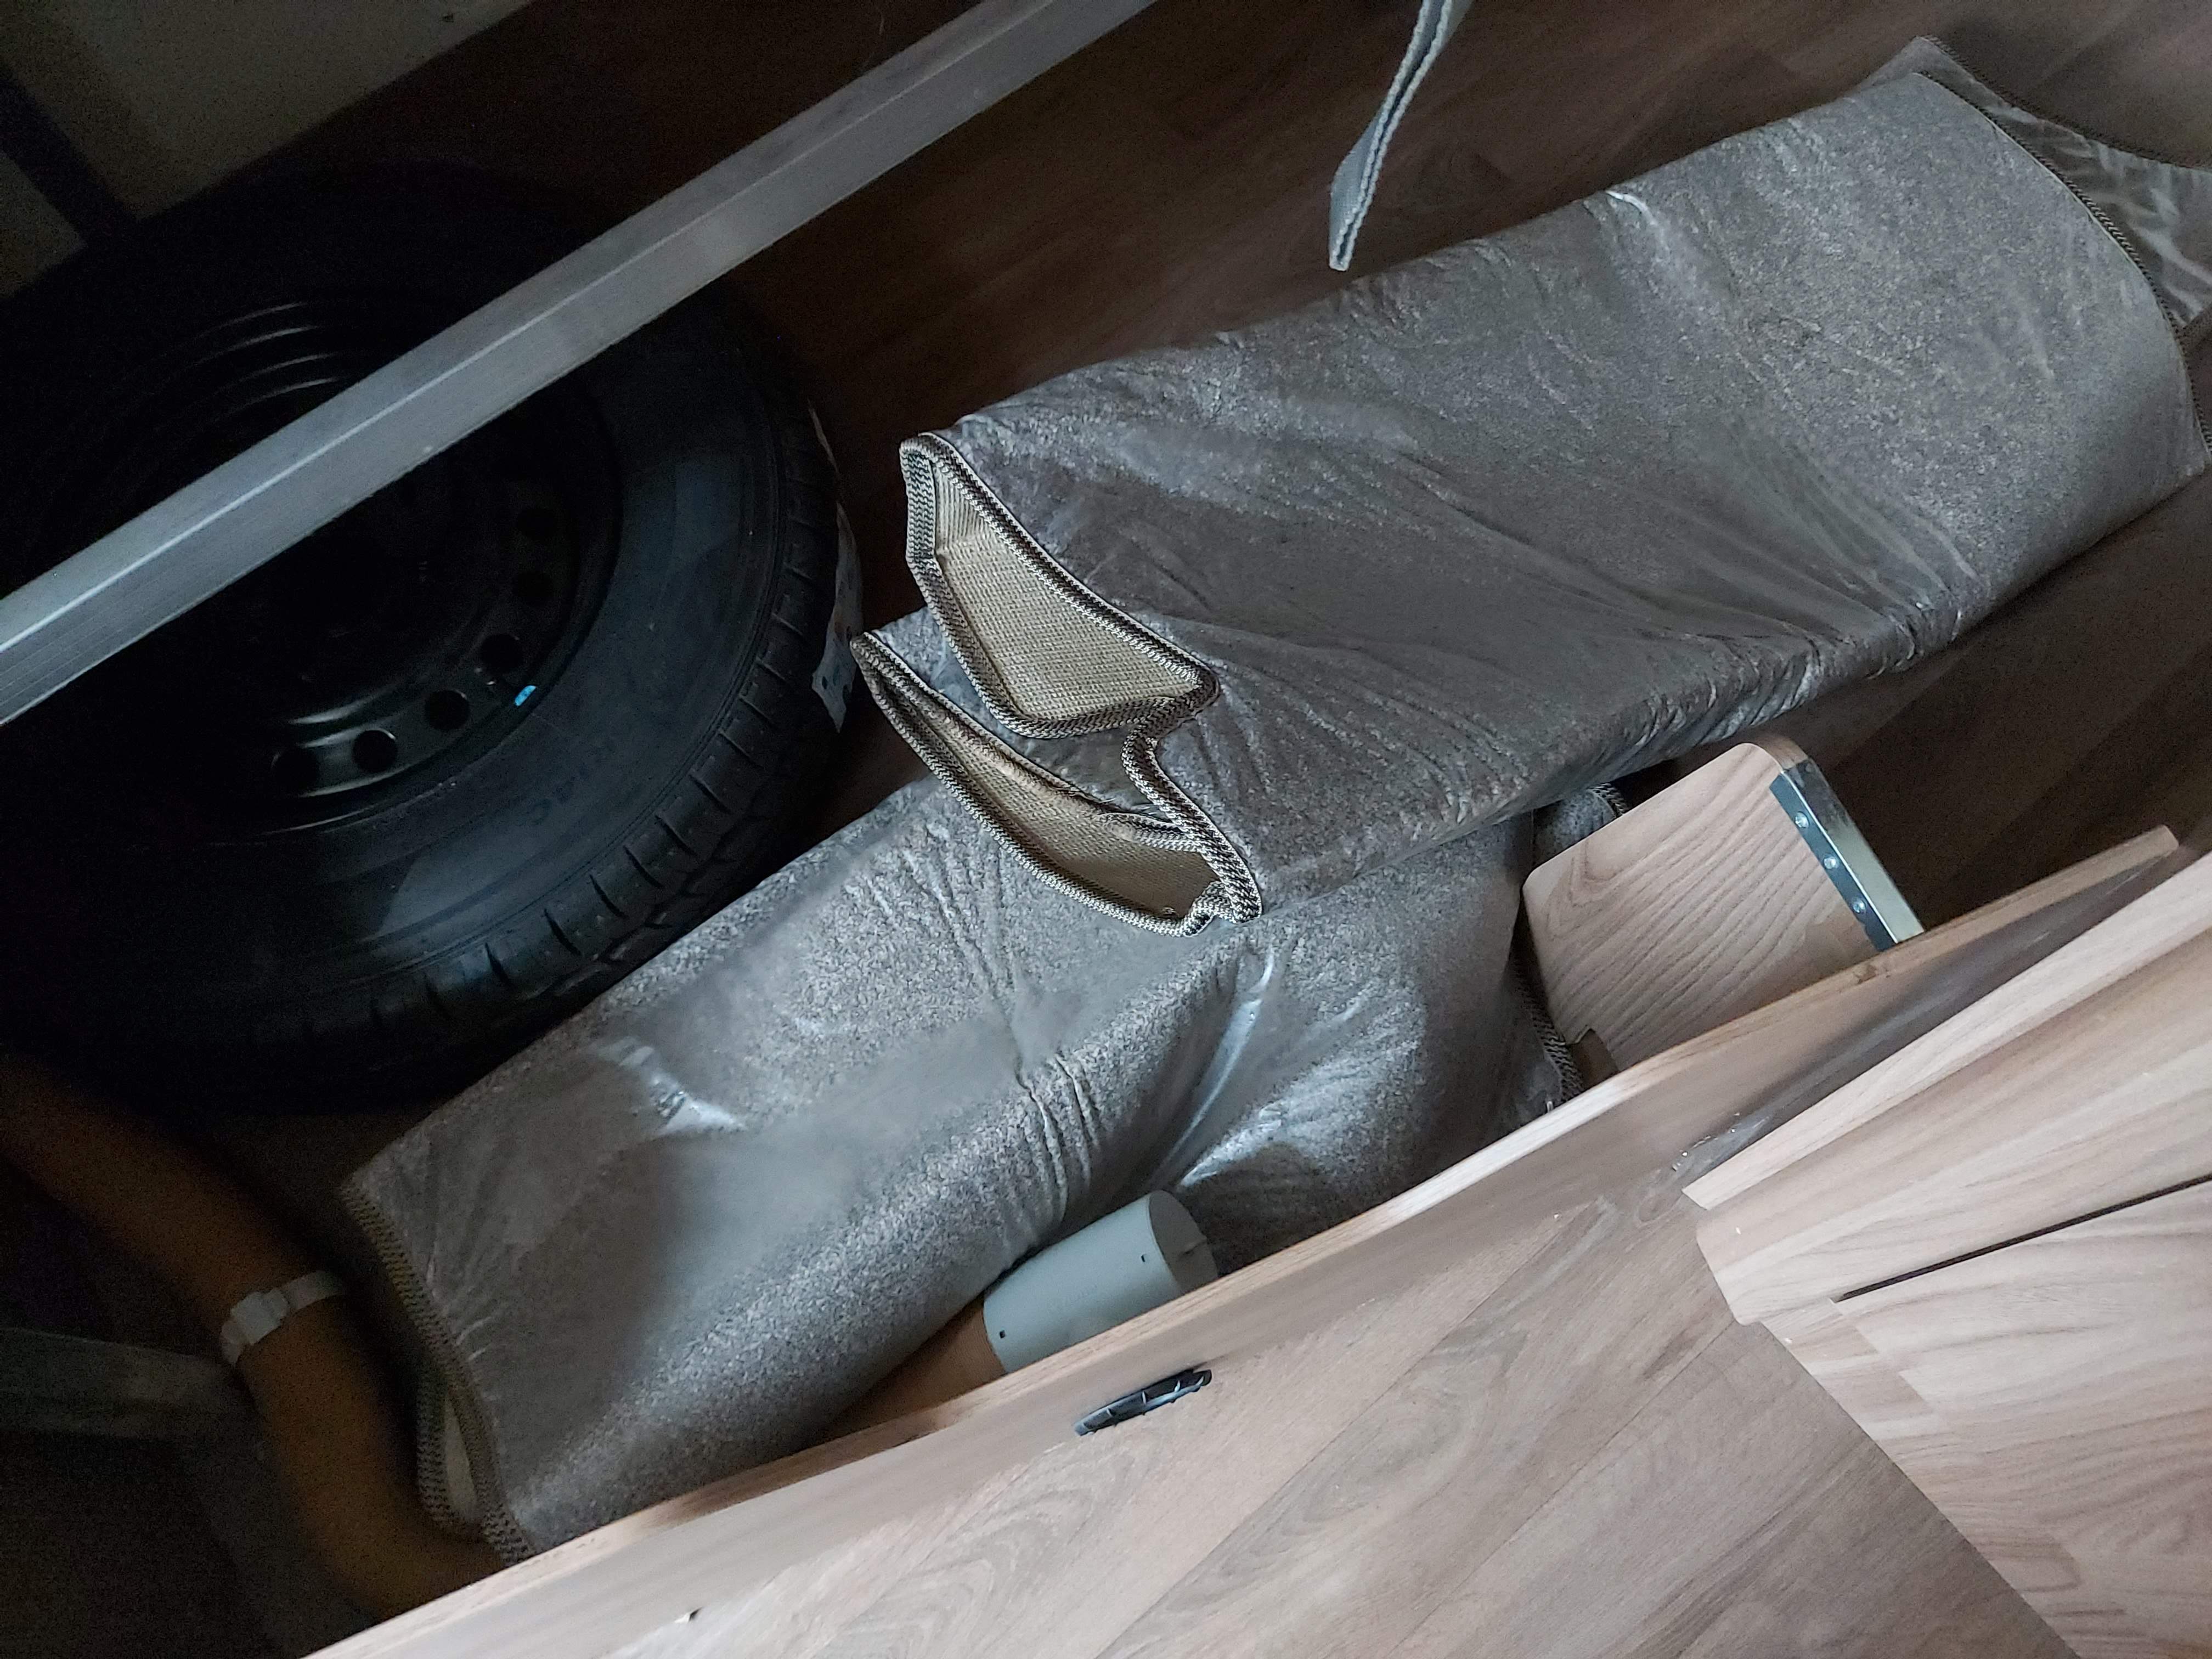 NOW SOLD 2018 Sprite Alpine 4 4 Berth Fixed Bed Lightweight Caravan